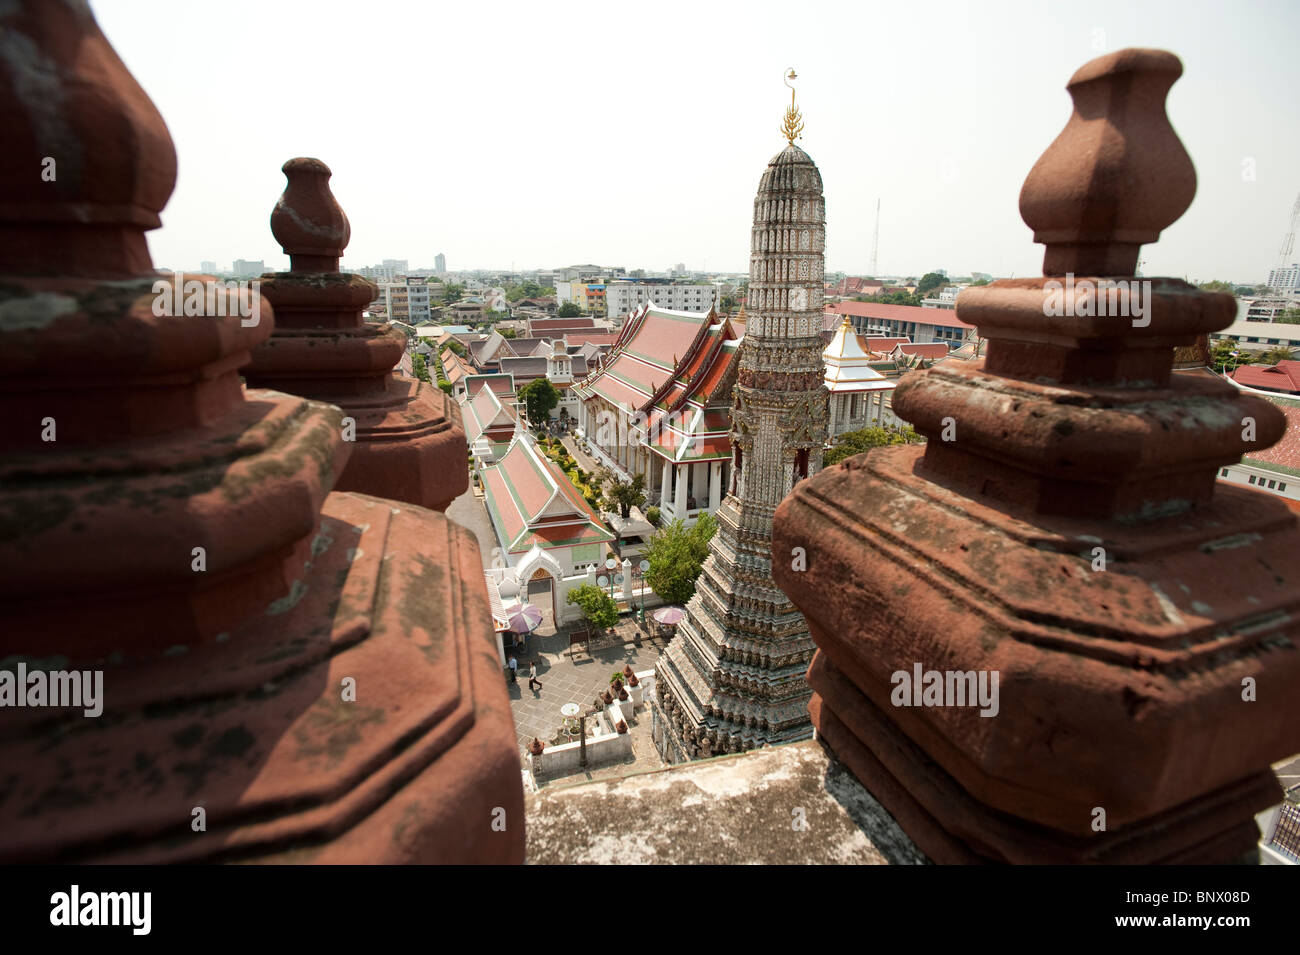 Vue du Temple de l'aube au Wat Arun, Bangkok, Thailande, Asie Banque D'Images